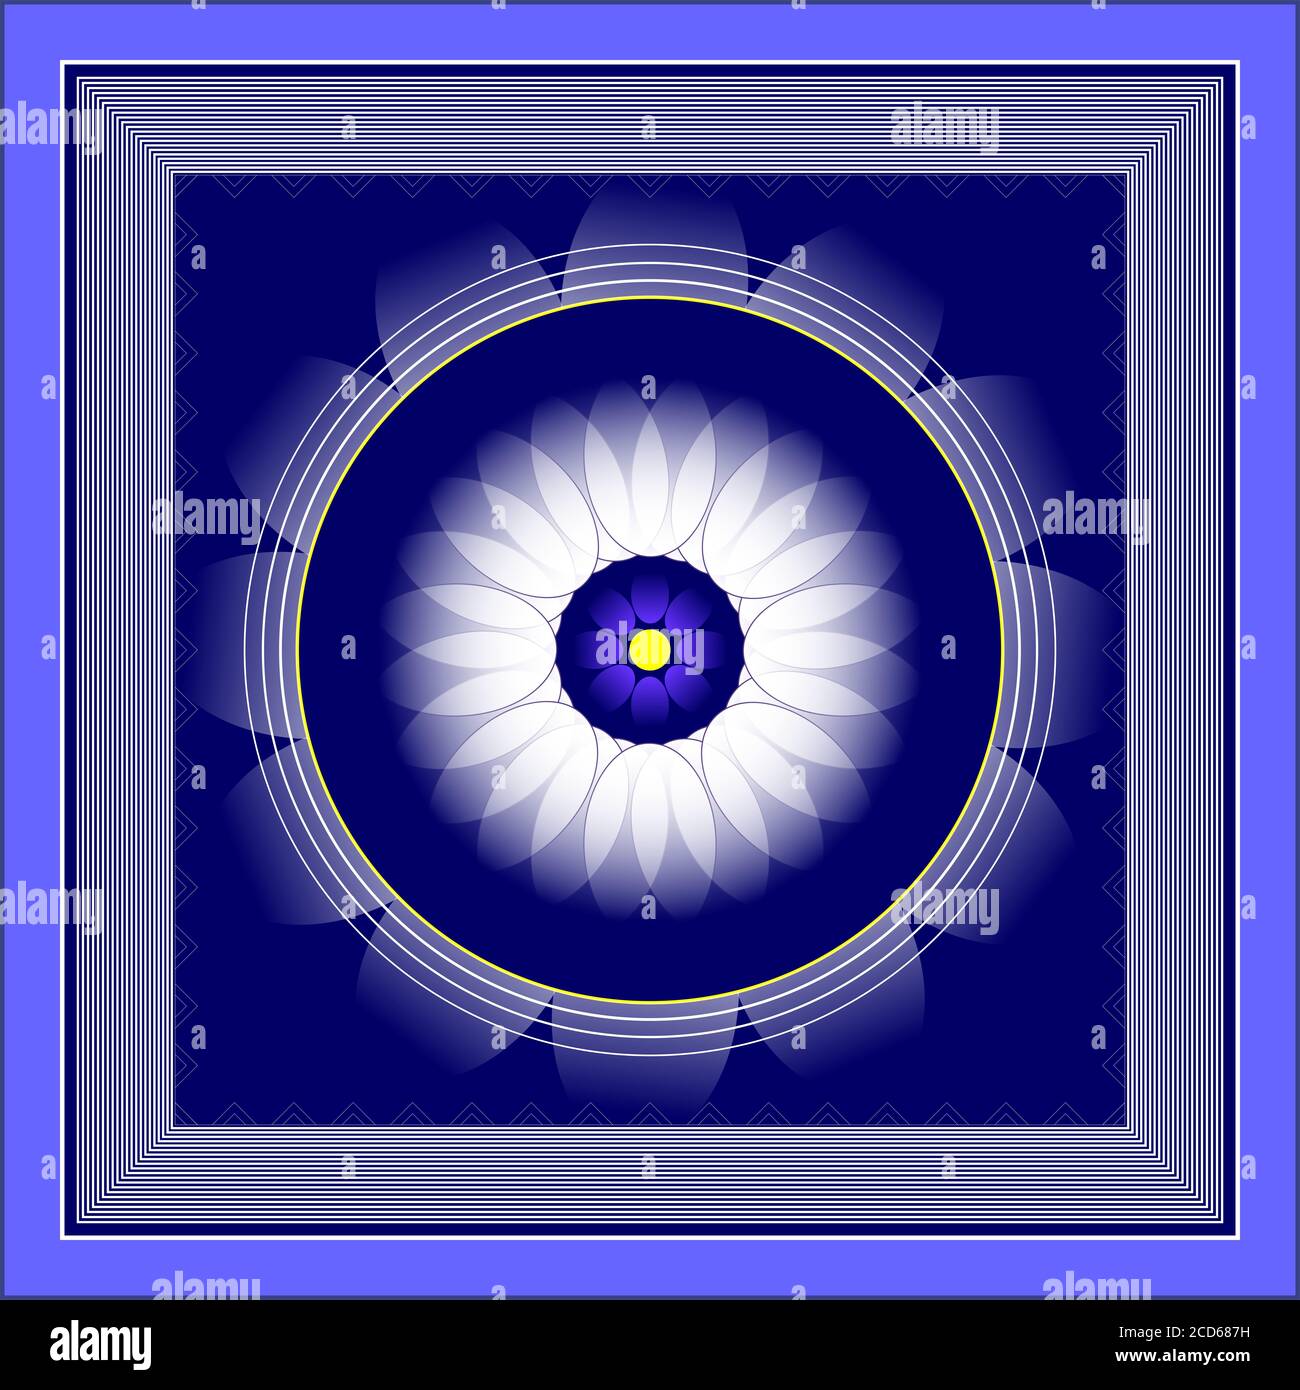 Mandala blanc pur abstrait avec bordures blanches de protection multi-couches avec noyau jaune au centre sur fond bleu profond Banque D'Images